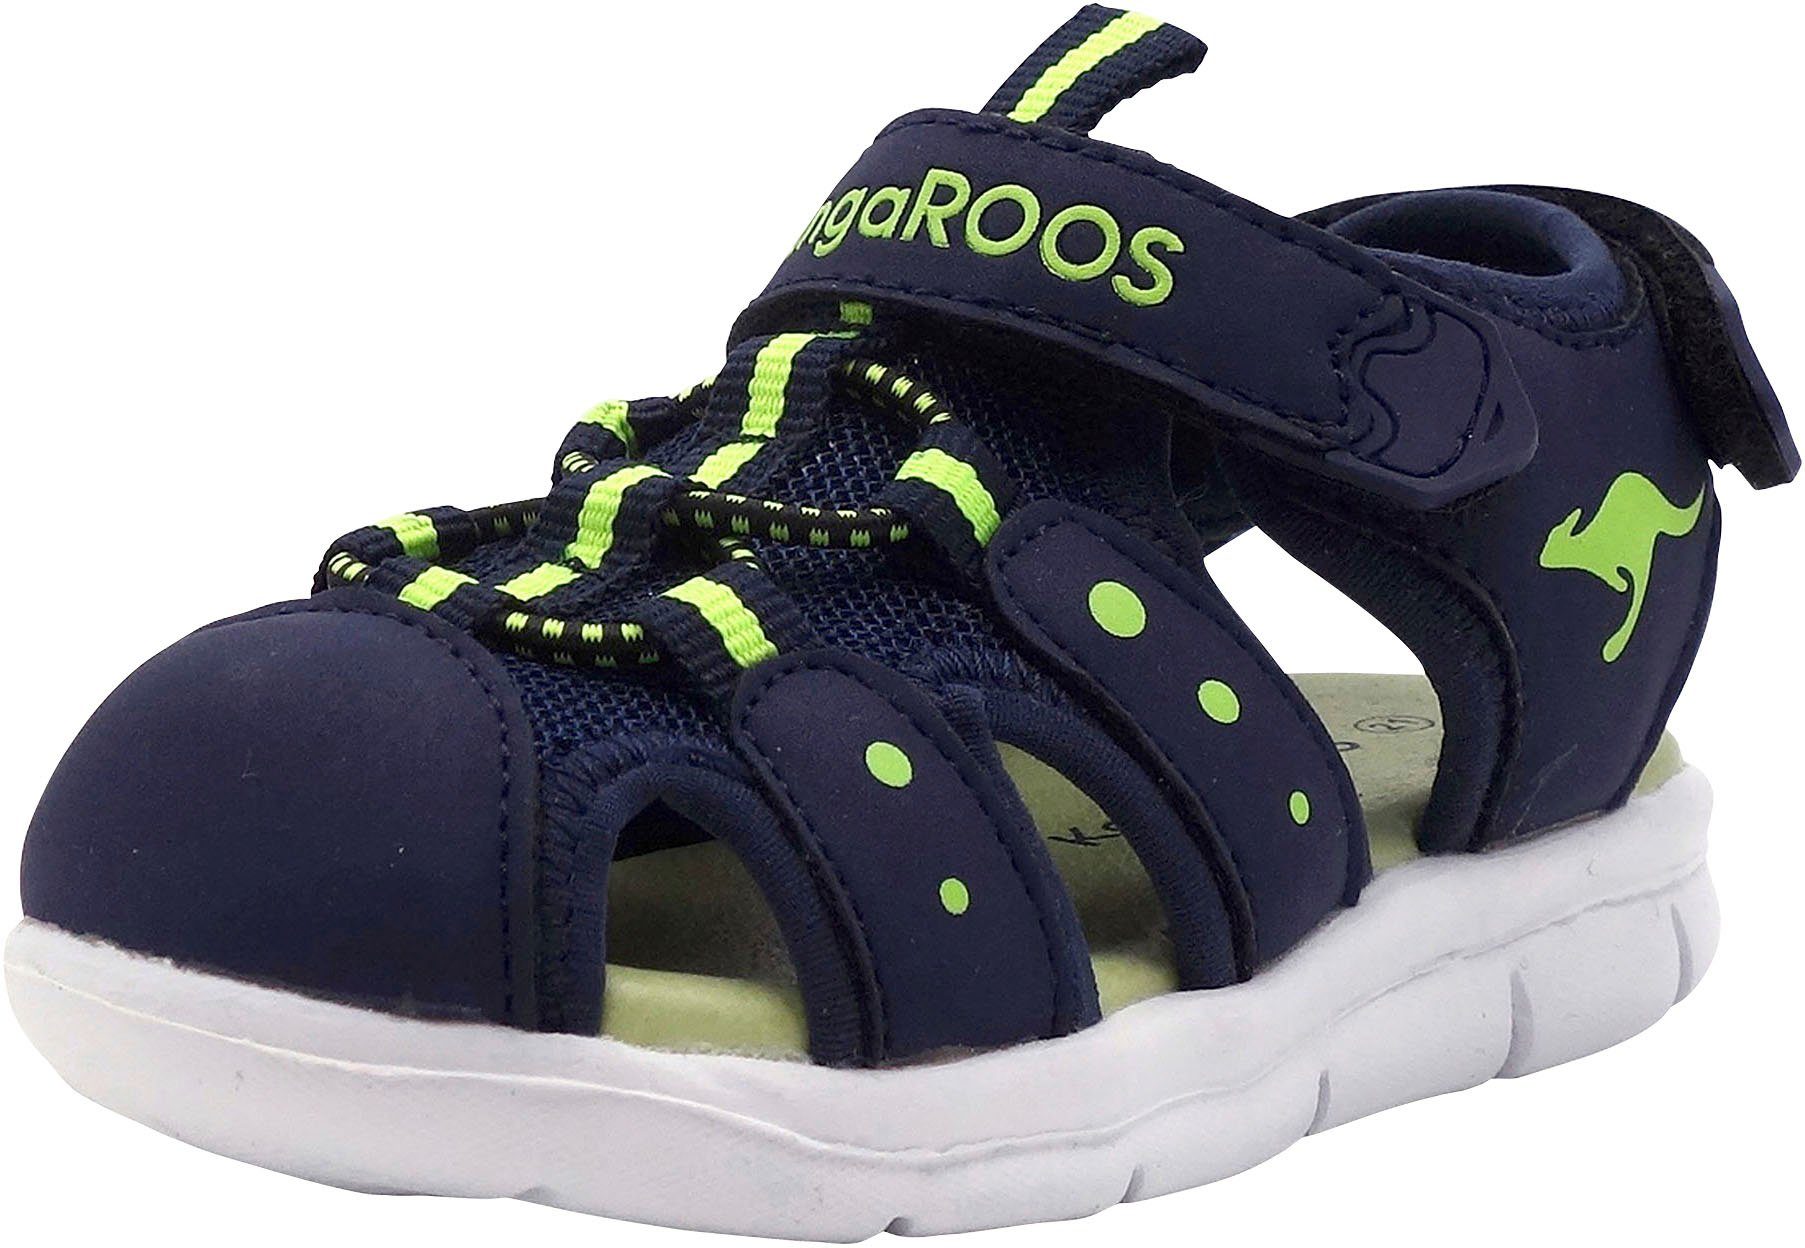 Weitenmaßsystem Passgerechte K-Mini Sandale mit dank KangaROOS ergonomischem zertifiziertem Klettverschluss, und Kinderschuhe